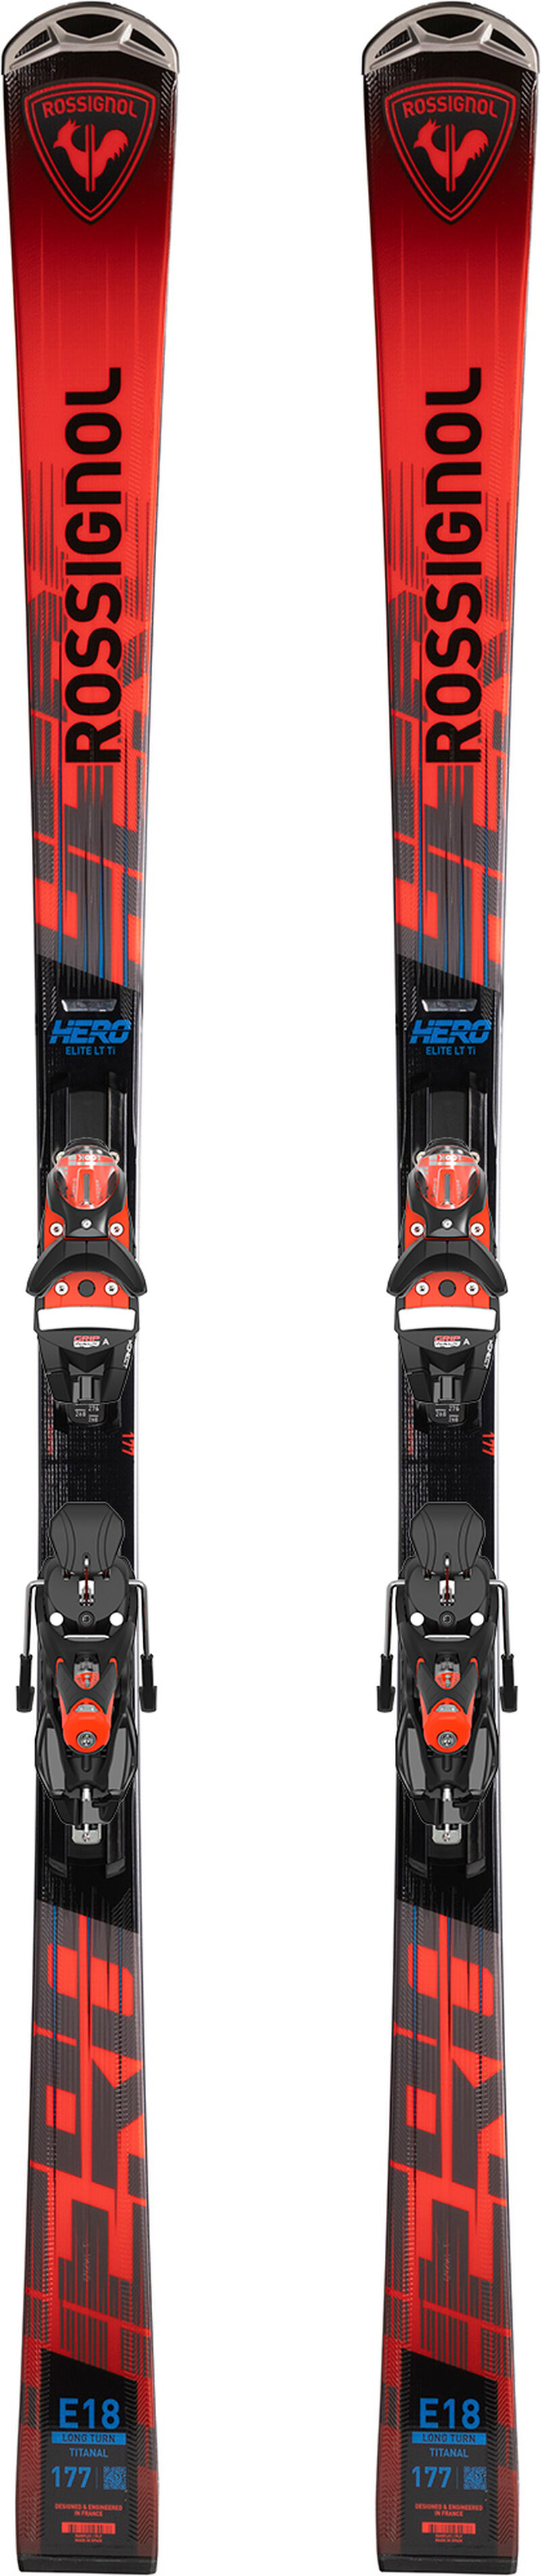 Pack Ski Rossignol Hero Elite Multi Turn + Fasteners Look